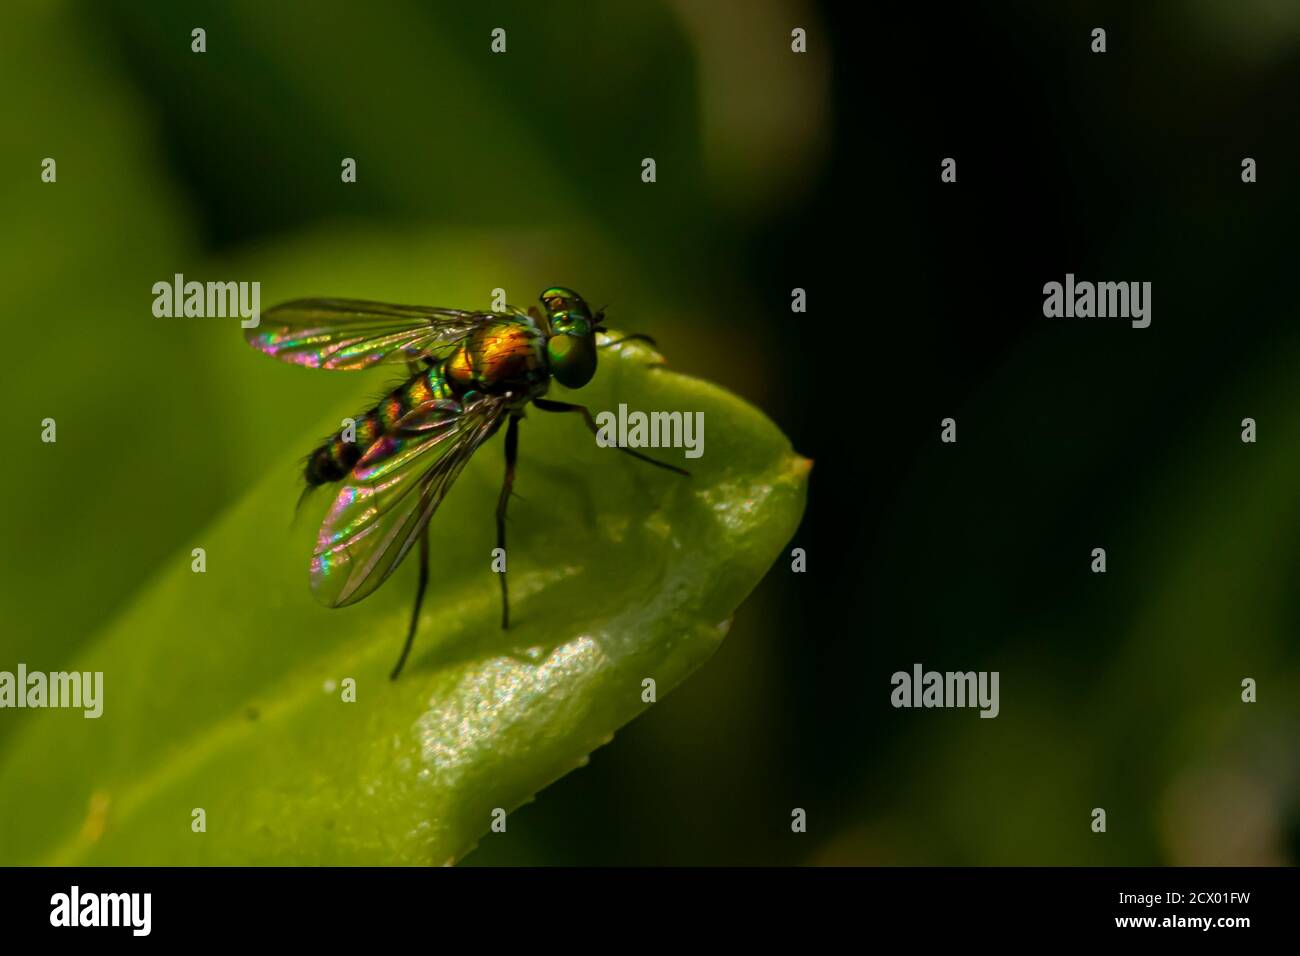 Nahaufnahme eines CondyloStylus caudatus fliegen auf einem Blatt. Das Makrolinsenbild zeigt die Details des schlanken, haarigen Gehäuses, der leuchtenden metallisch-grünen Farbe und Stockfoto